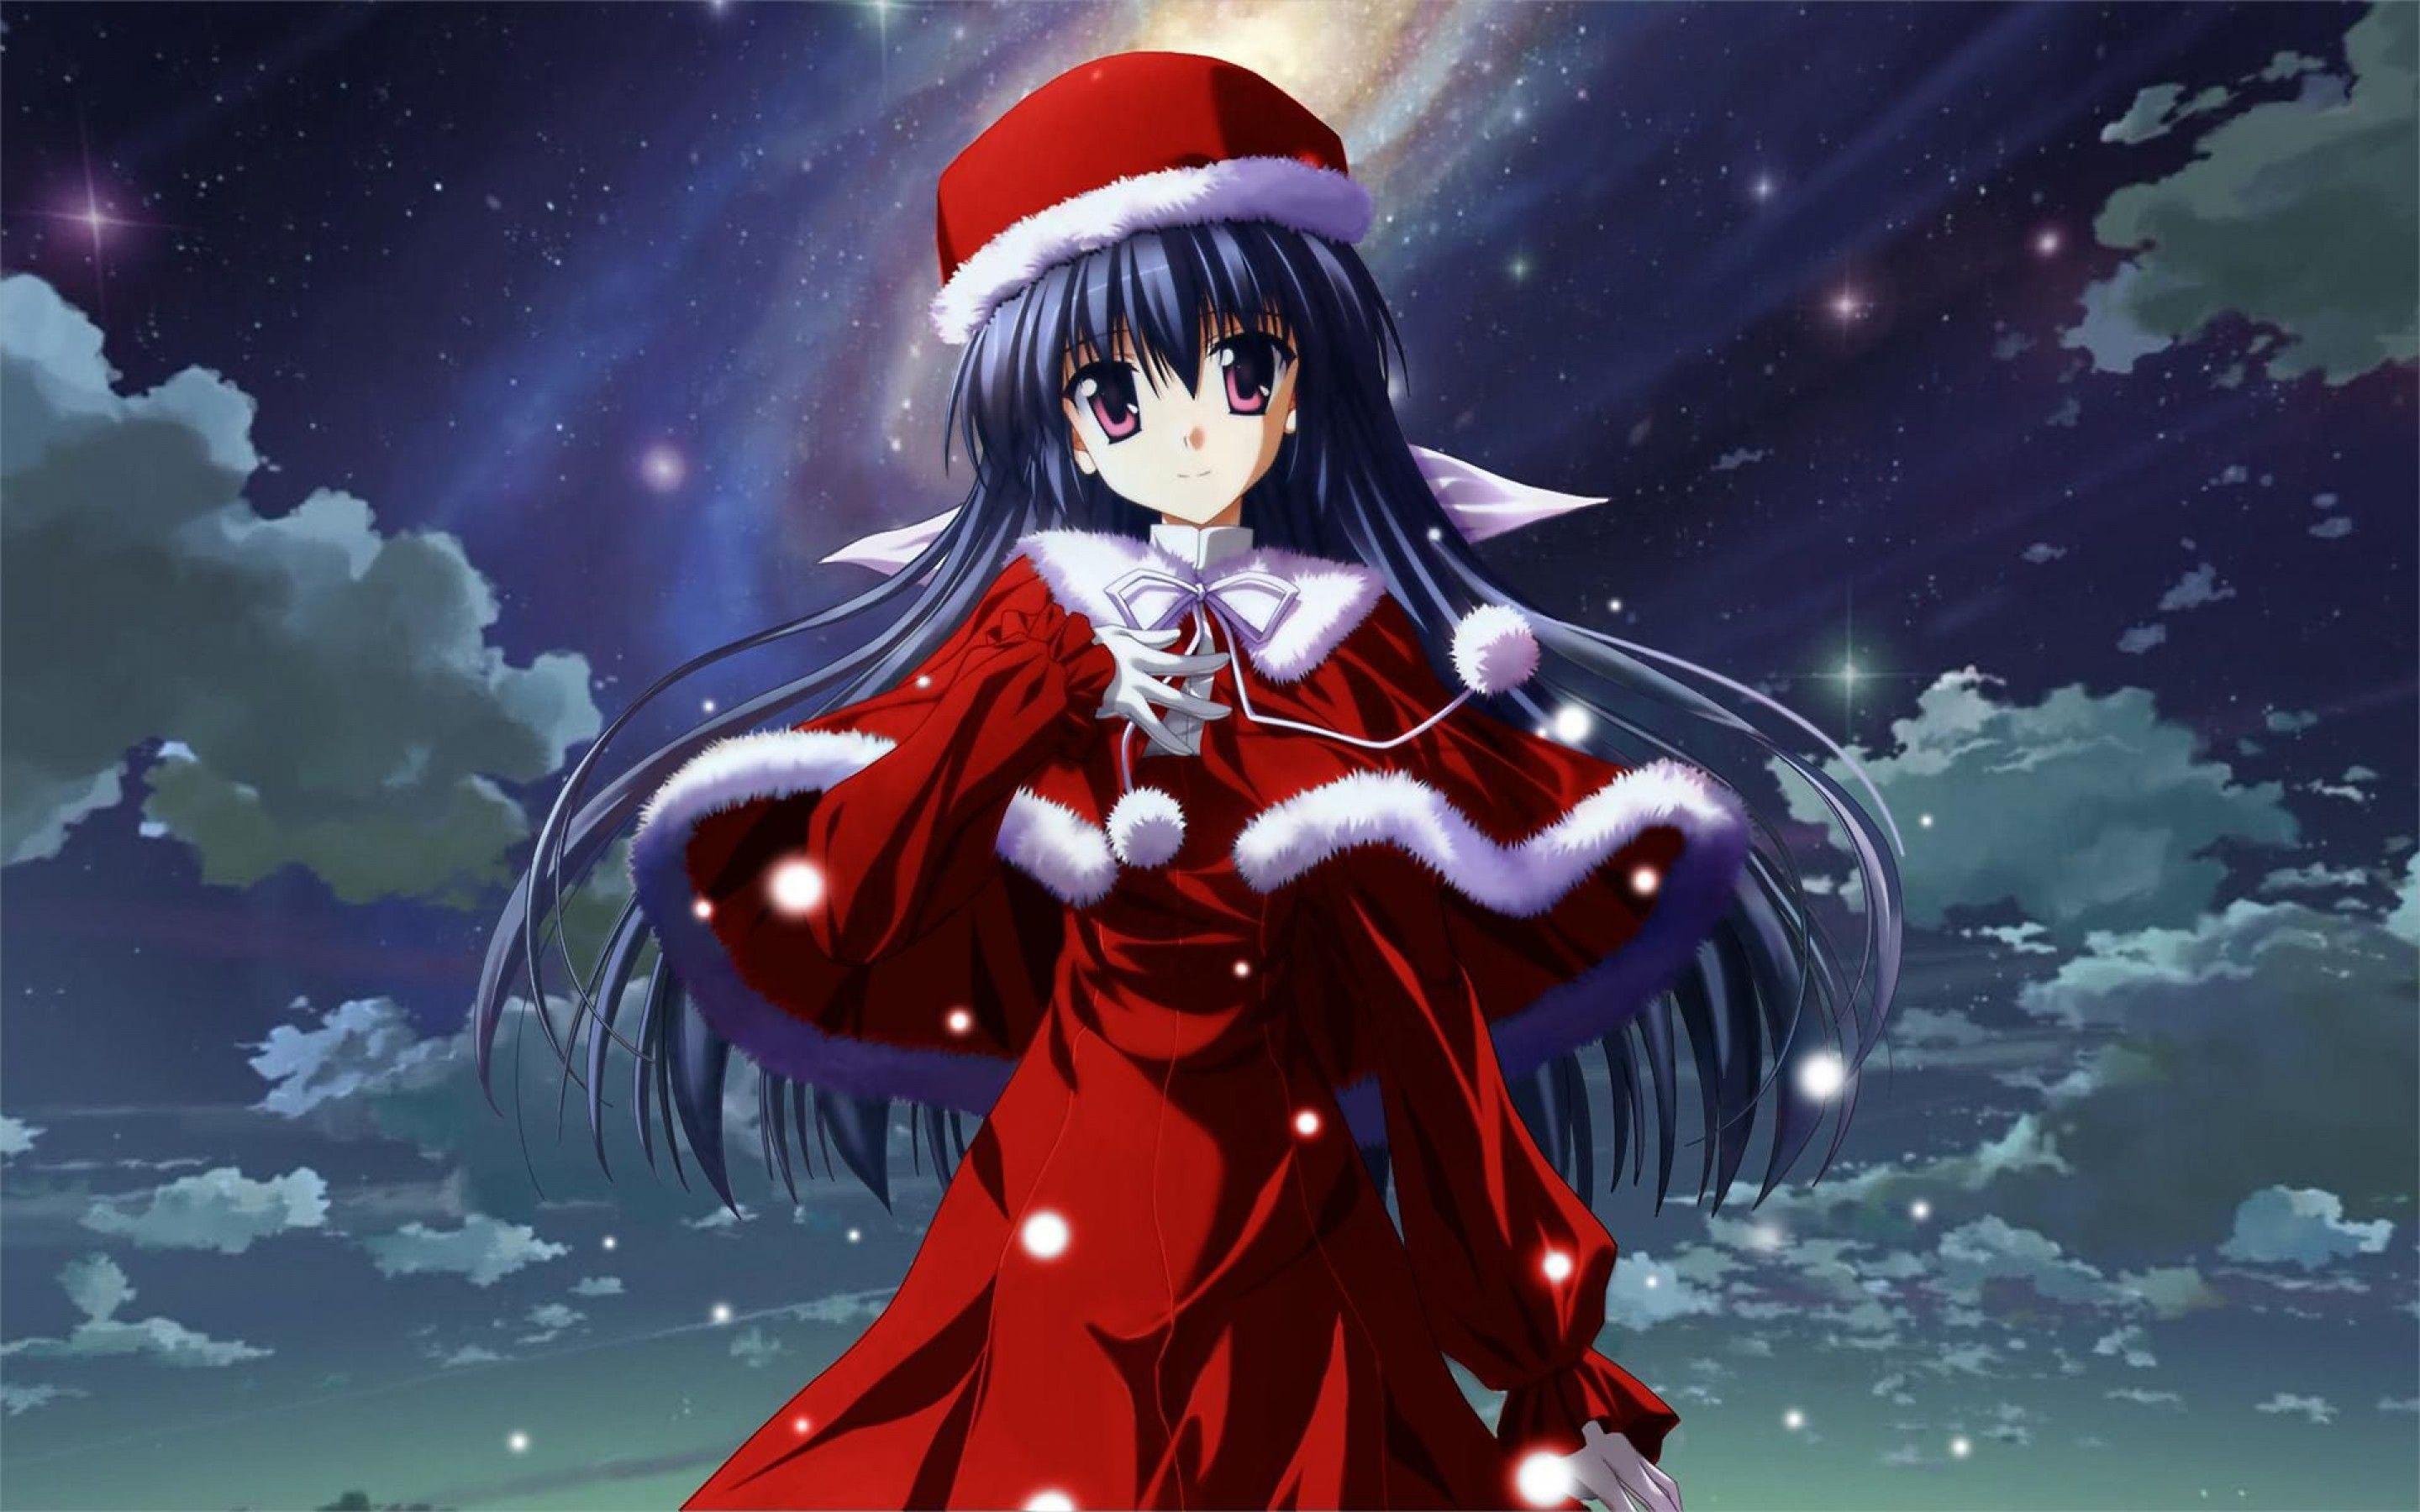 Đón lễ giáng sinh ấm áp với bộ hình nền Noel anime dễ thương cho máy